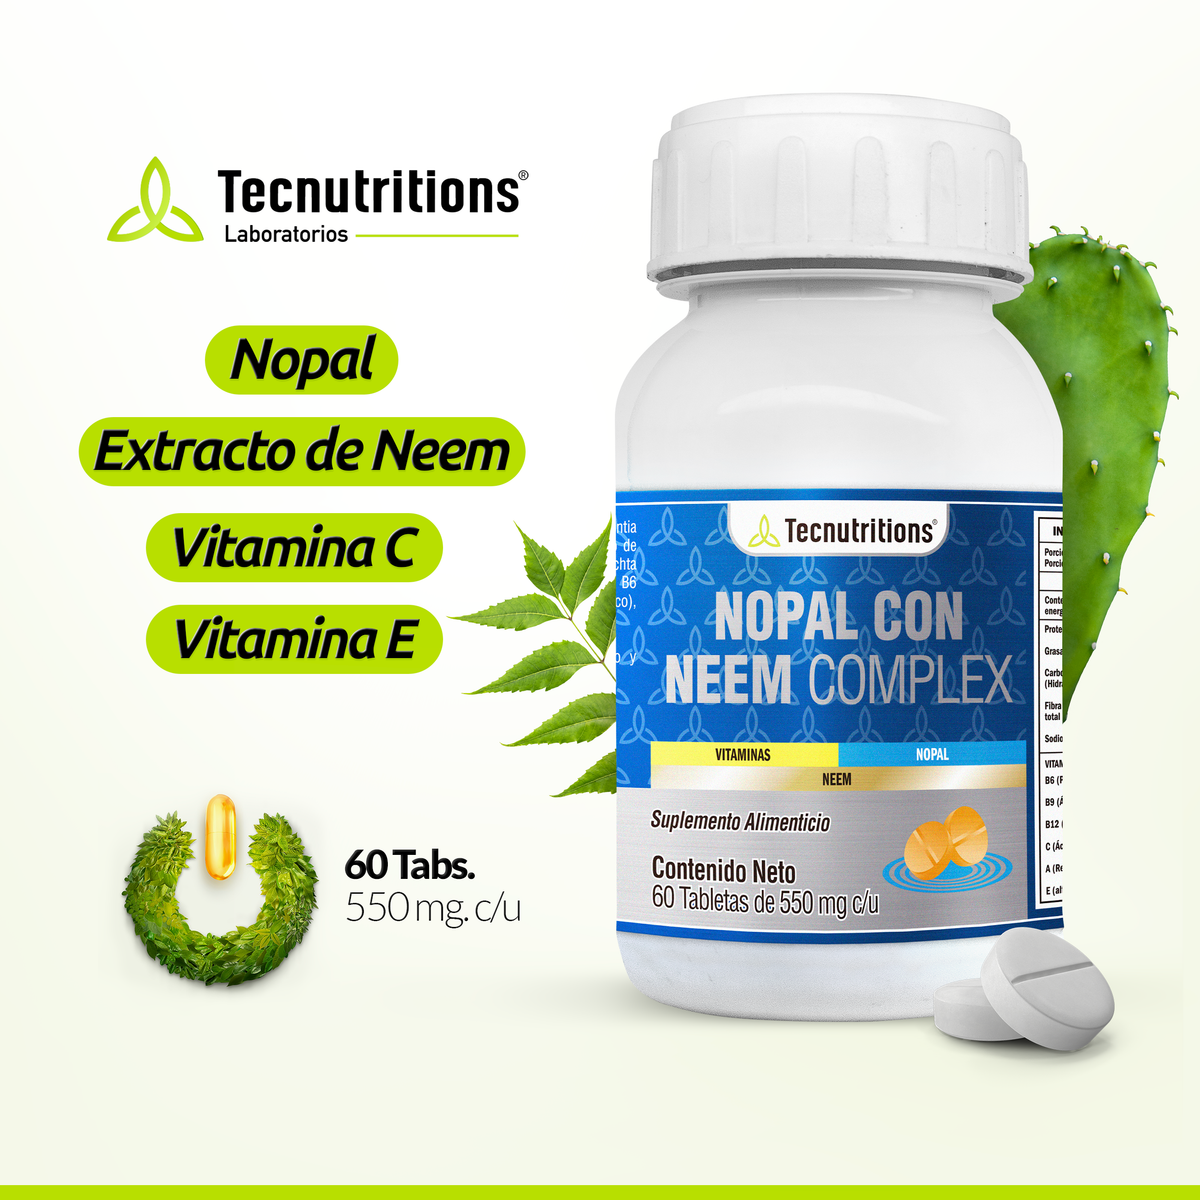 Suplemento alimenticio Nopal con Neem Complex, 60 tabs, con nopal, extracto de neem, vitamina c